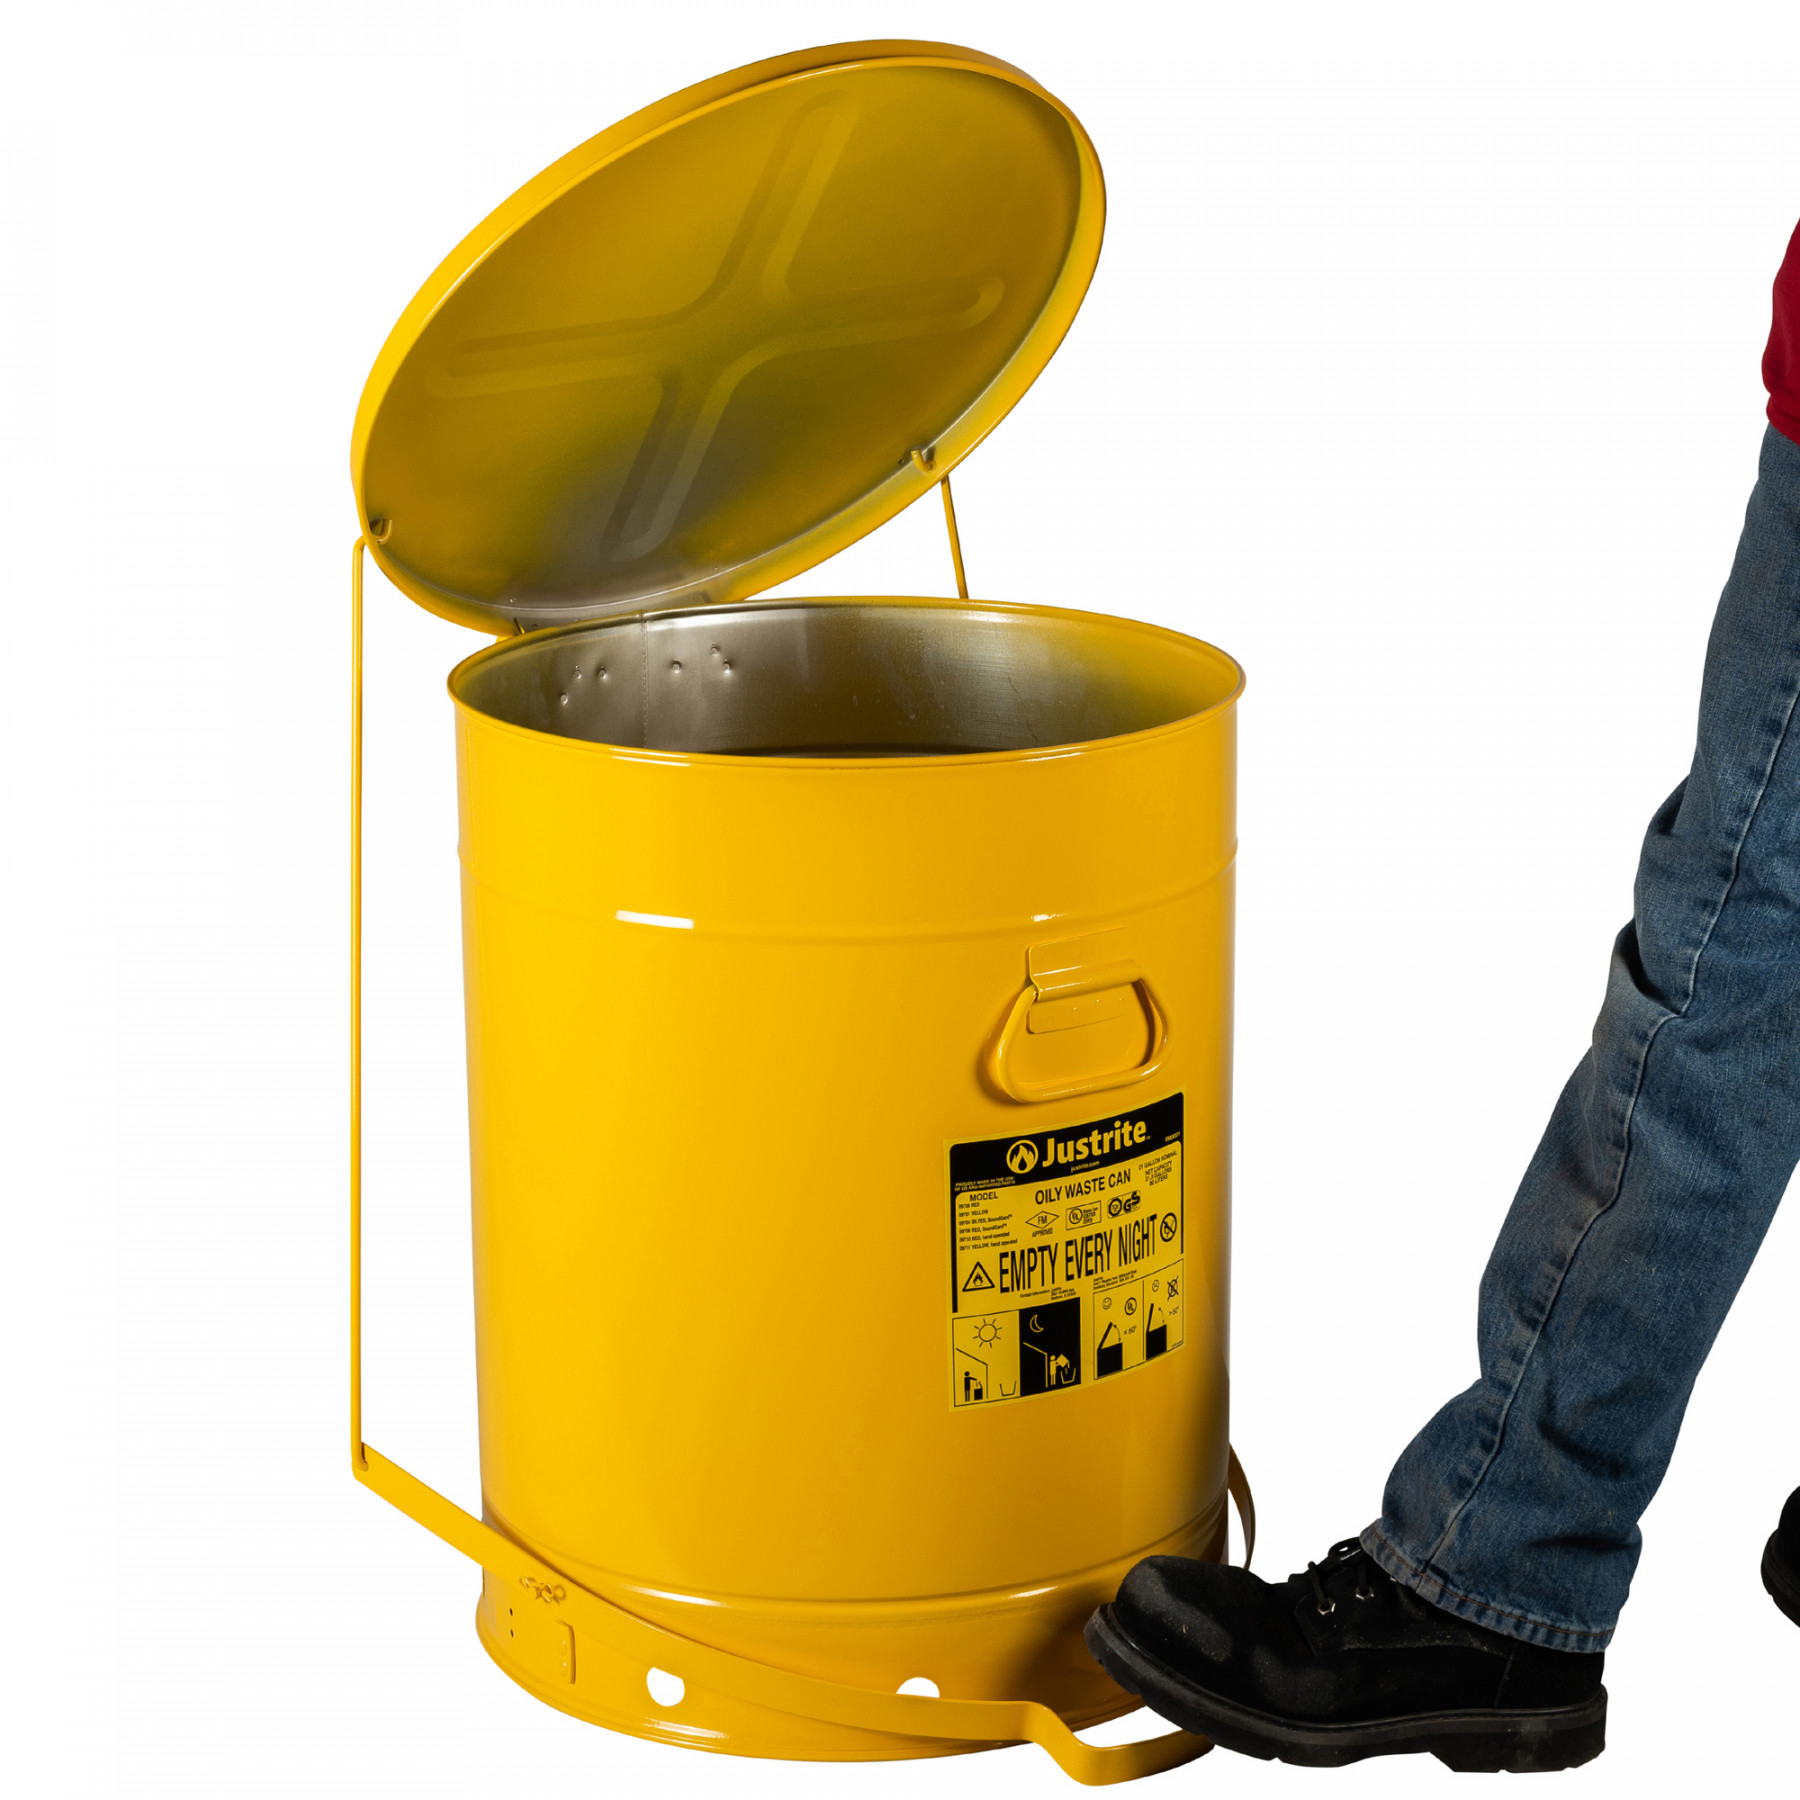 Sicherheits-Abfallbehälter für brennbare Stoffe,80 Liter, in gelb